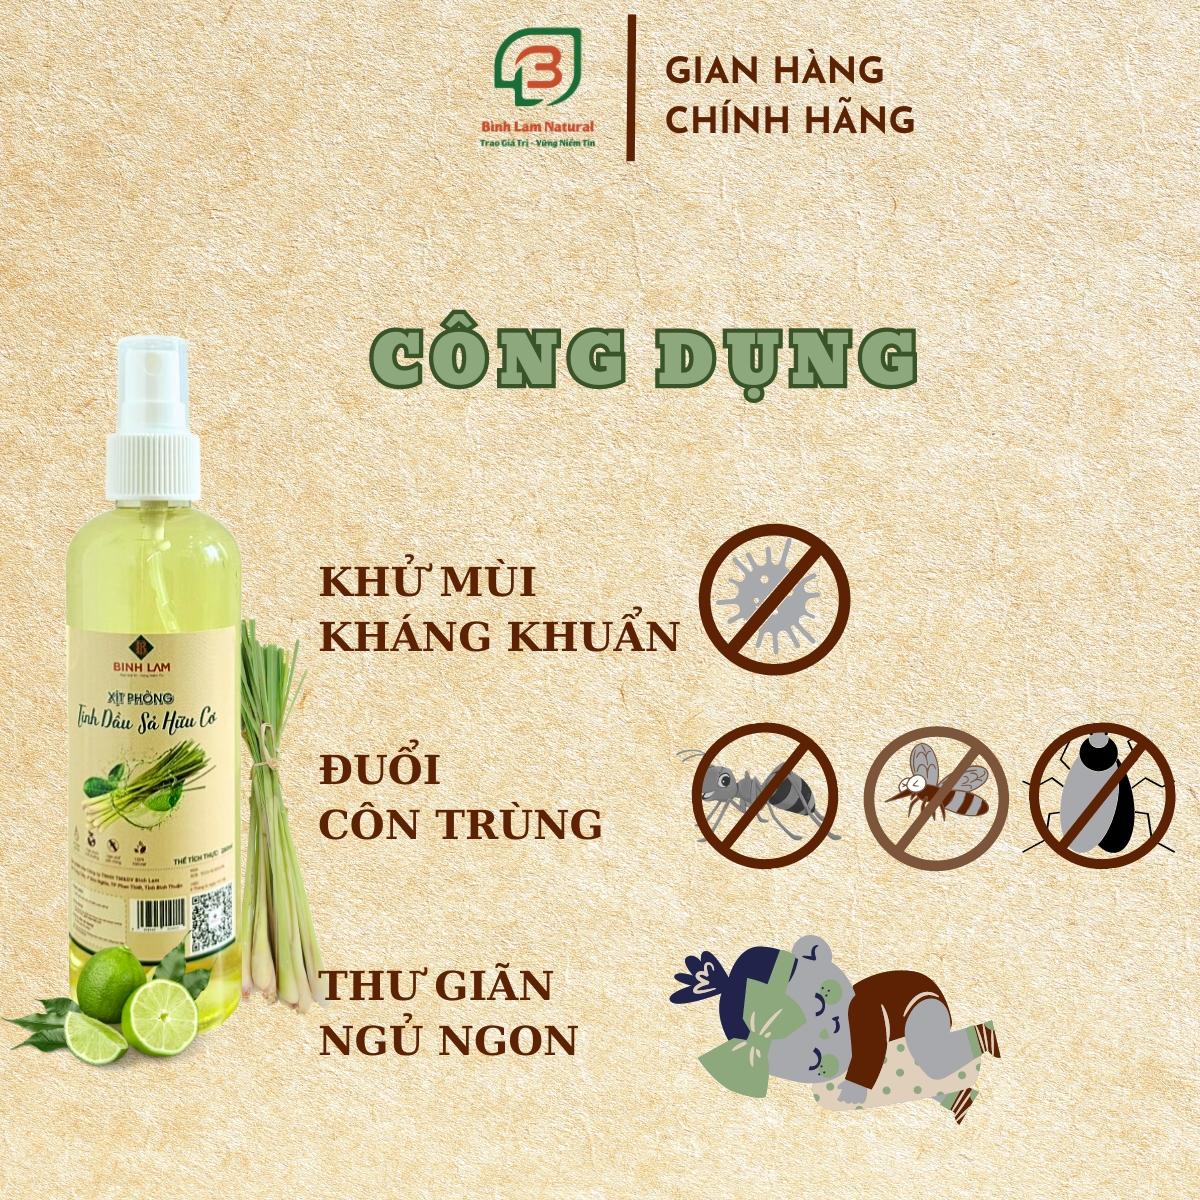 Combo 02 Xịt phòng tinh dầu đuổi muỗi, côn trùng, khử mùi, diệt khuẩn hữu cơ sả chanh Bình Lam Natural 250ml